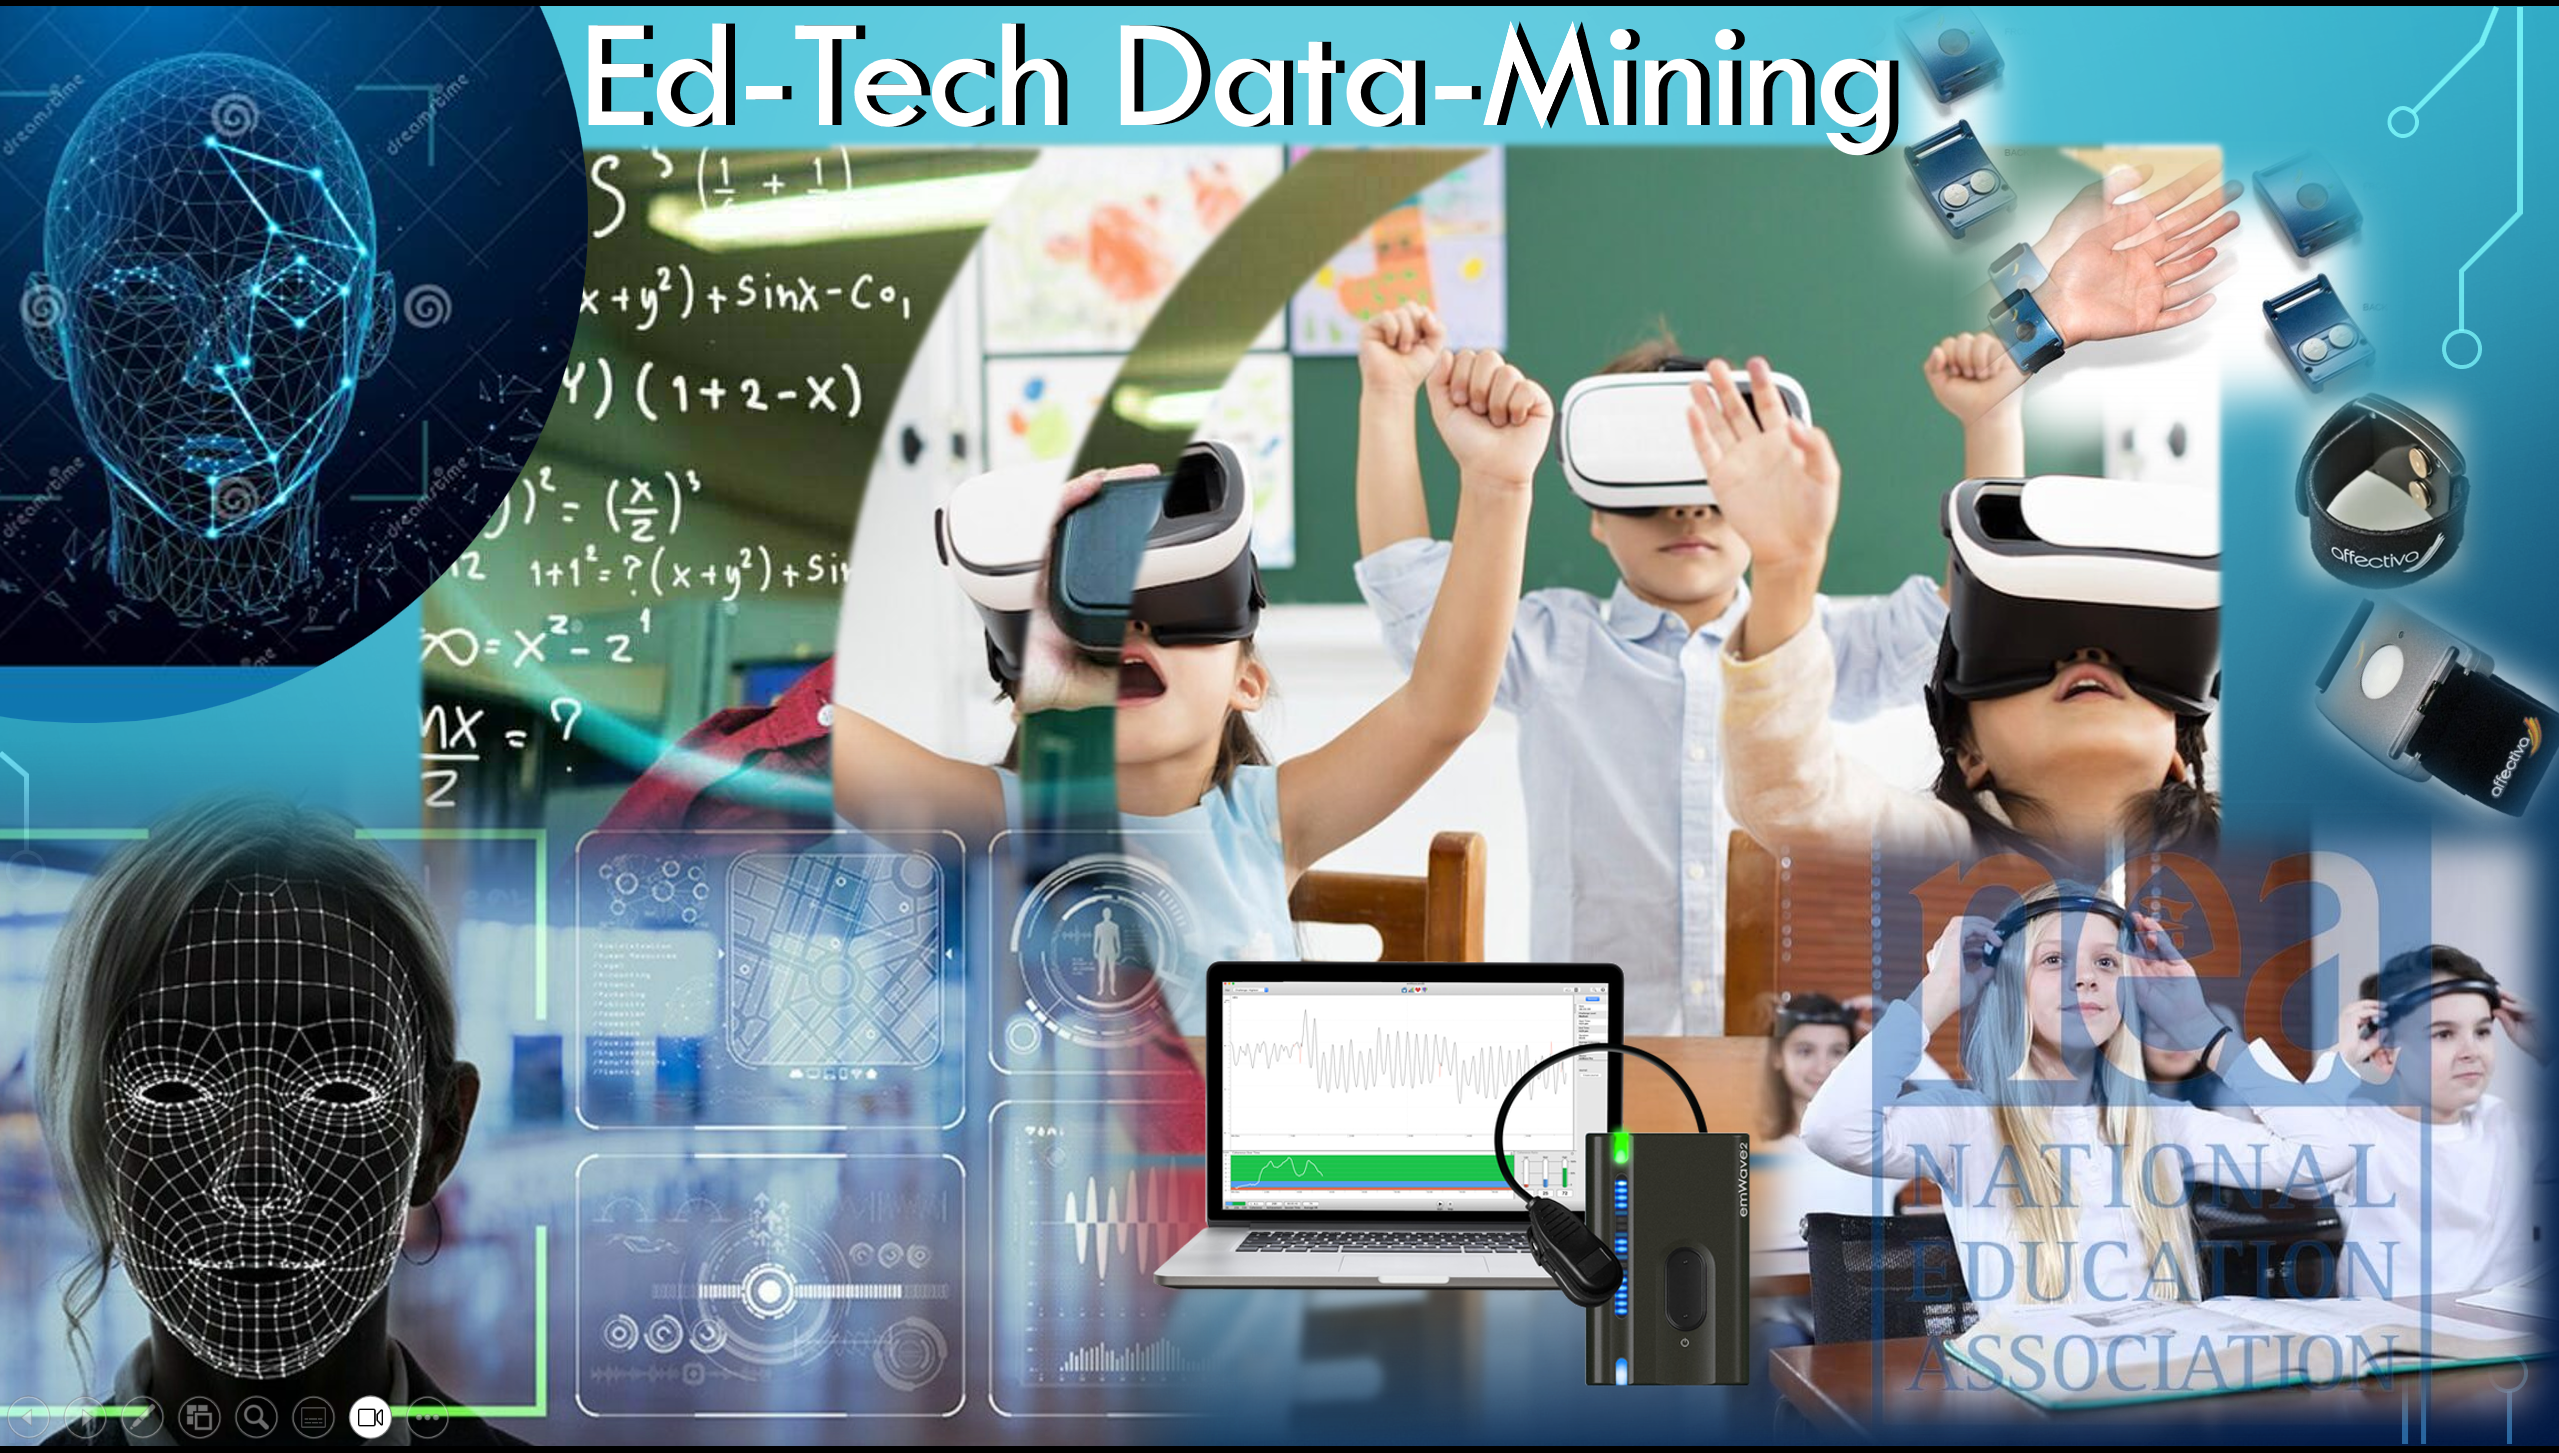 Ed-Tech Data-Mining slide